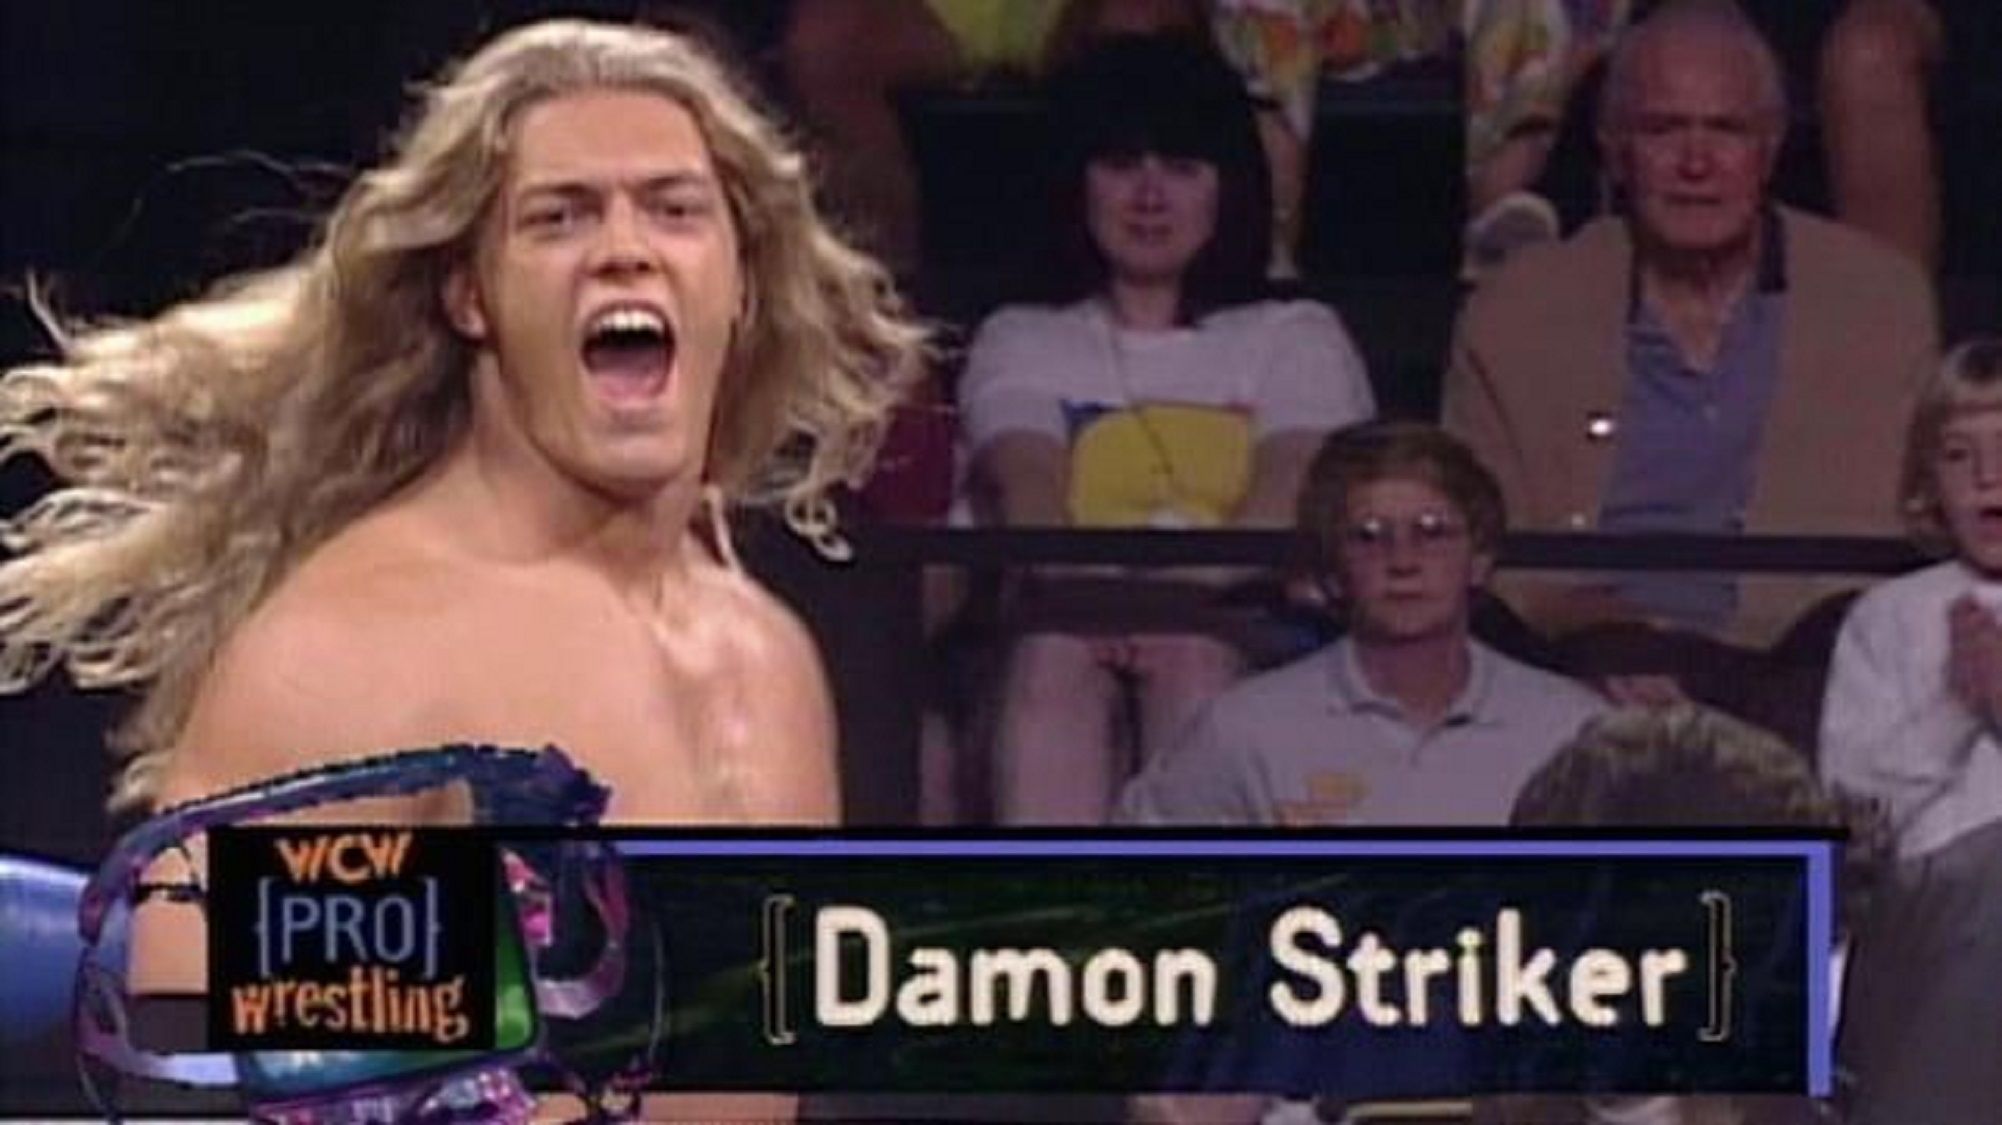 Edge as Damon Striker in WCW